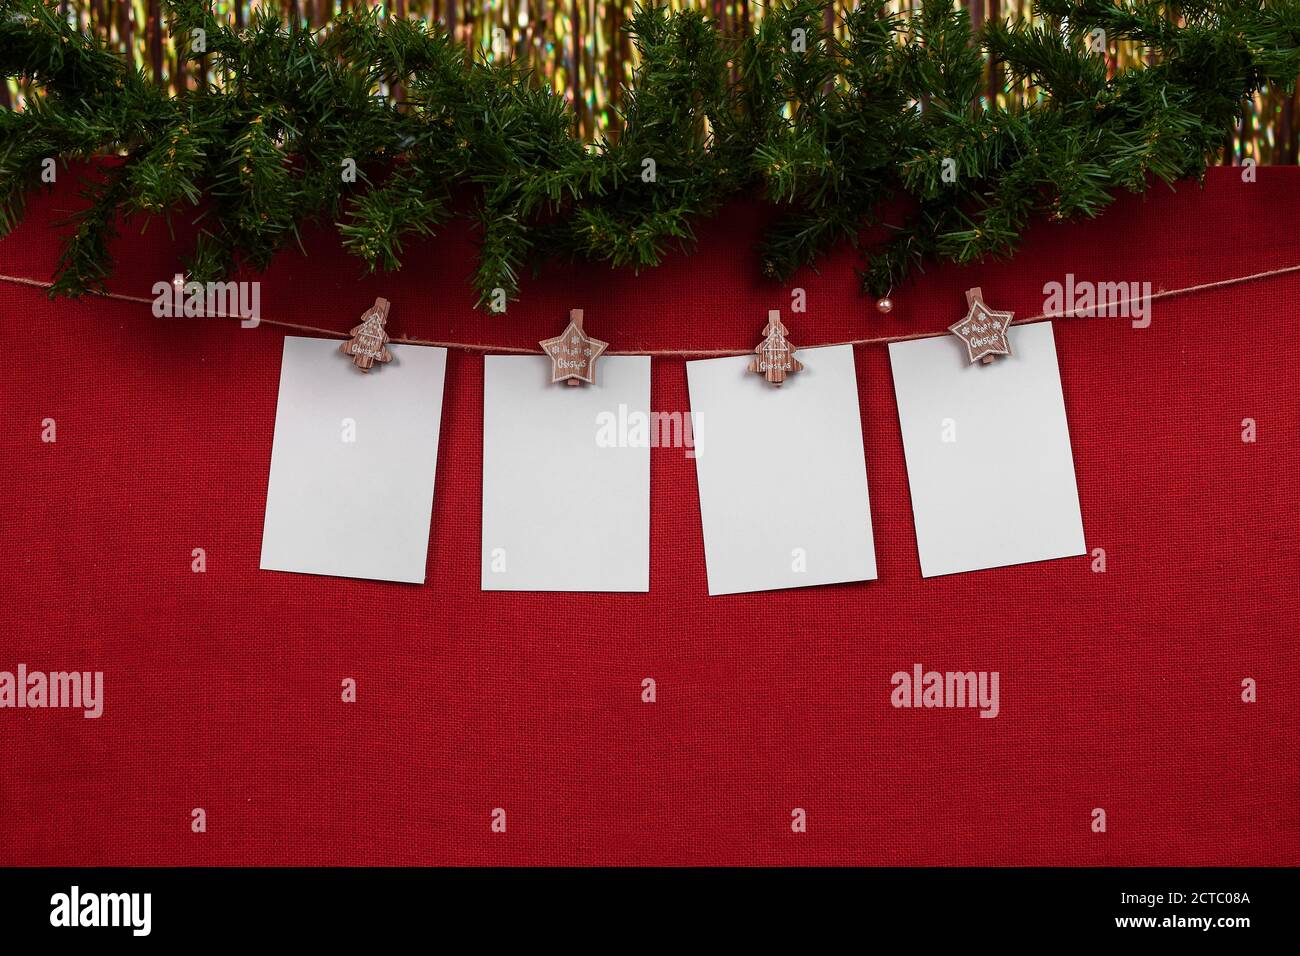 Neues Jahr Mock up mit 4 leere weiße Blätter für Schreiben der Jahreszahl oder Beschriftung auf ein Roter Hintergrund mit weihnachtsschmuck Stockfoto